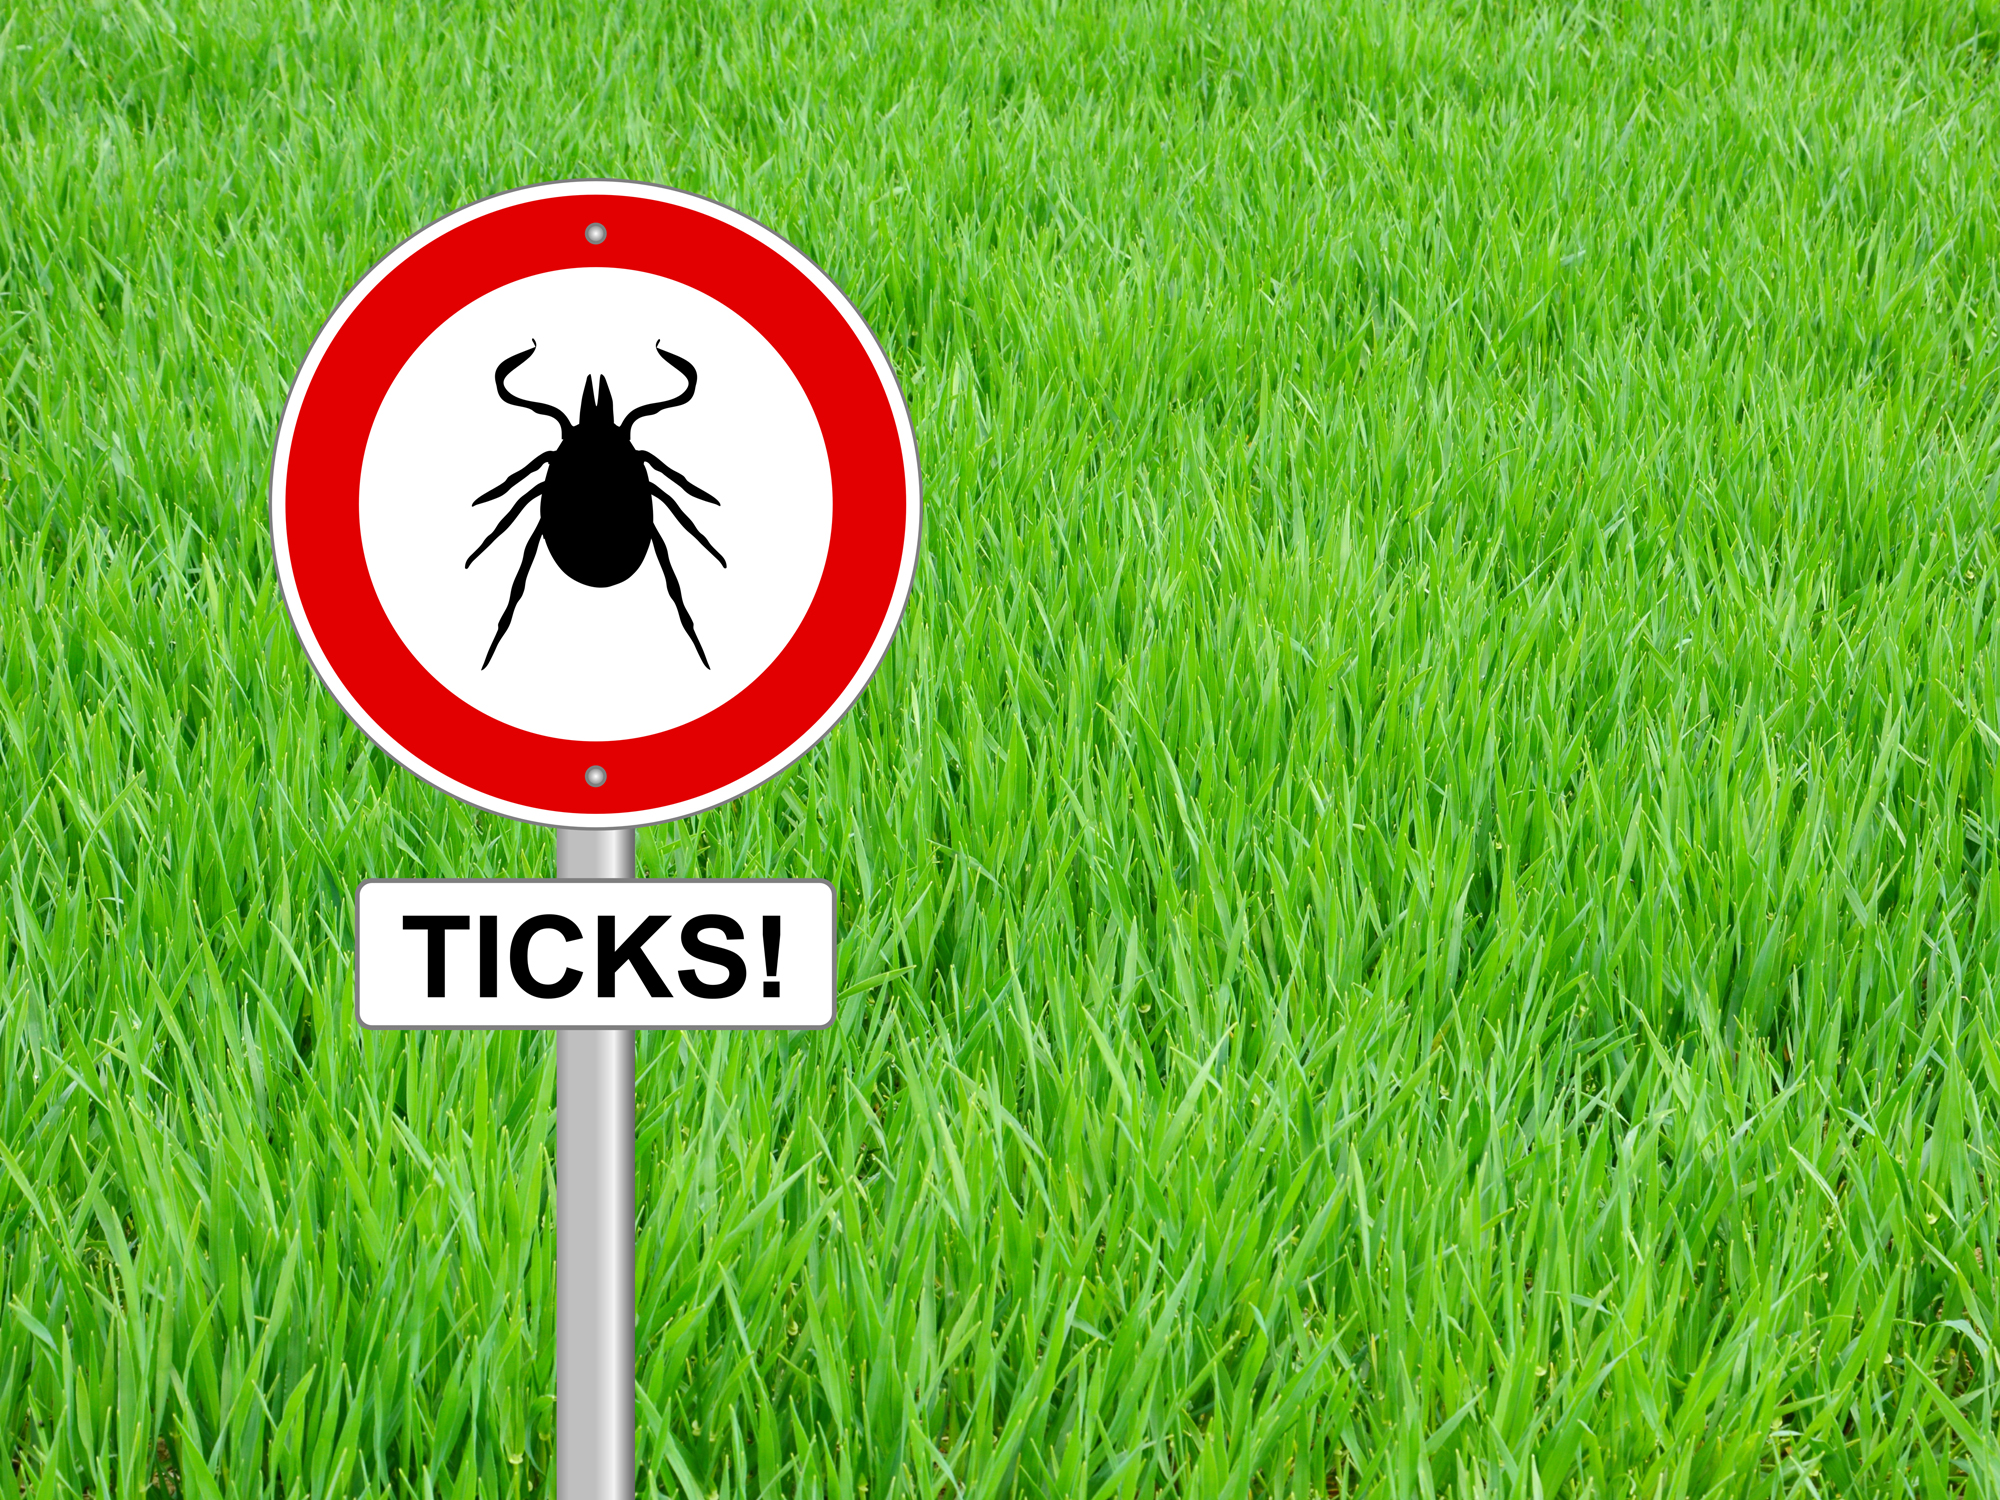 The new tick danger